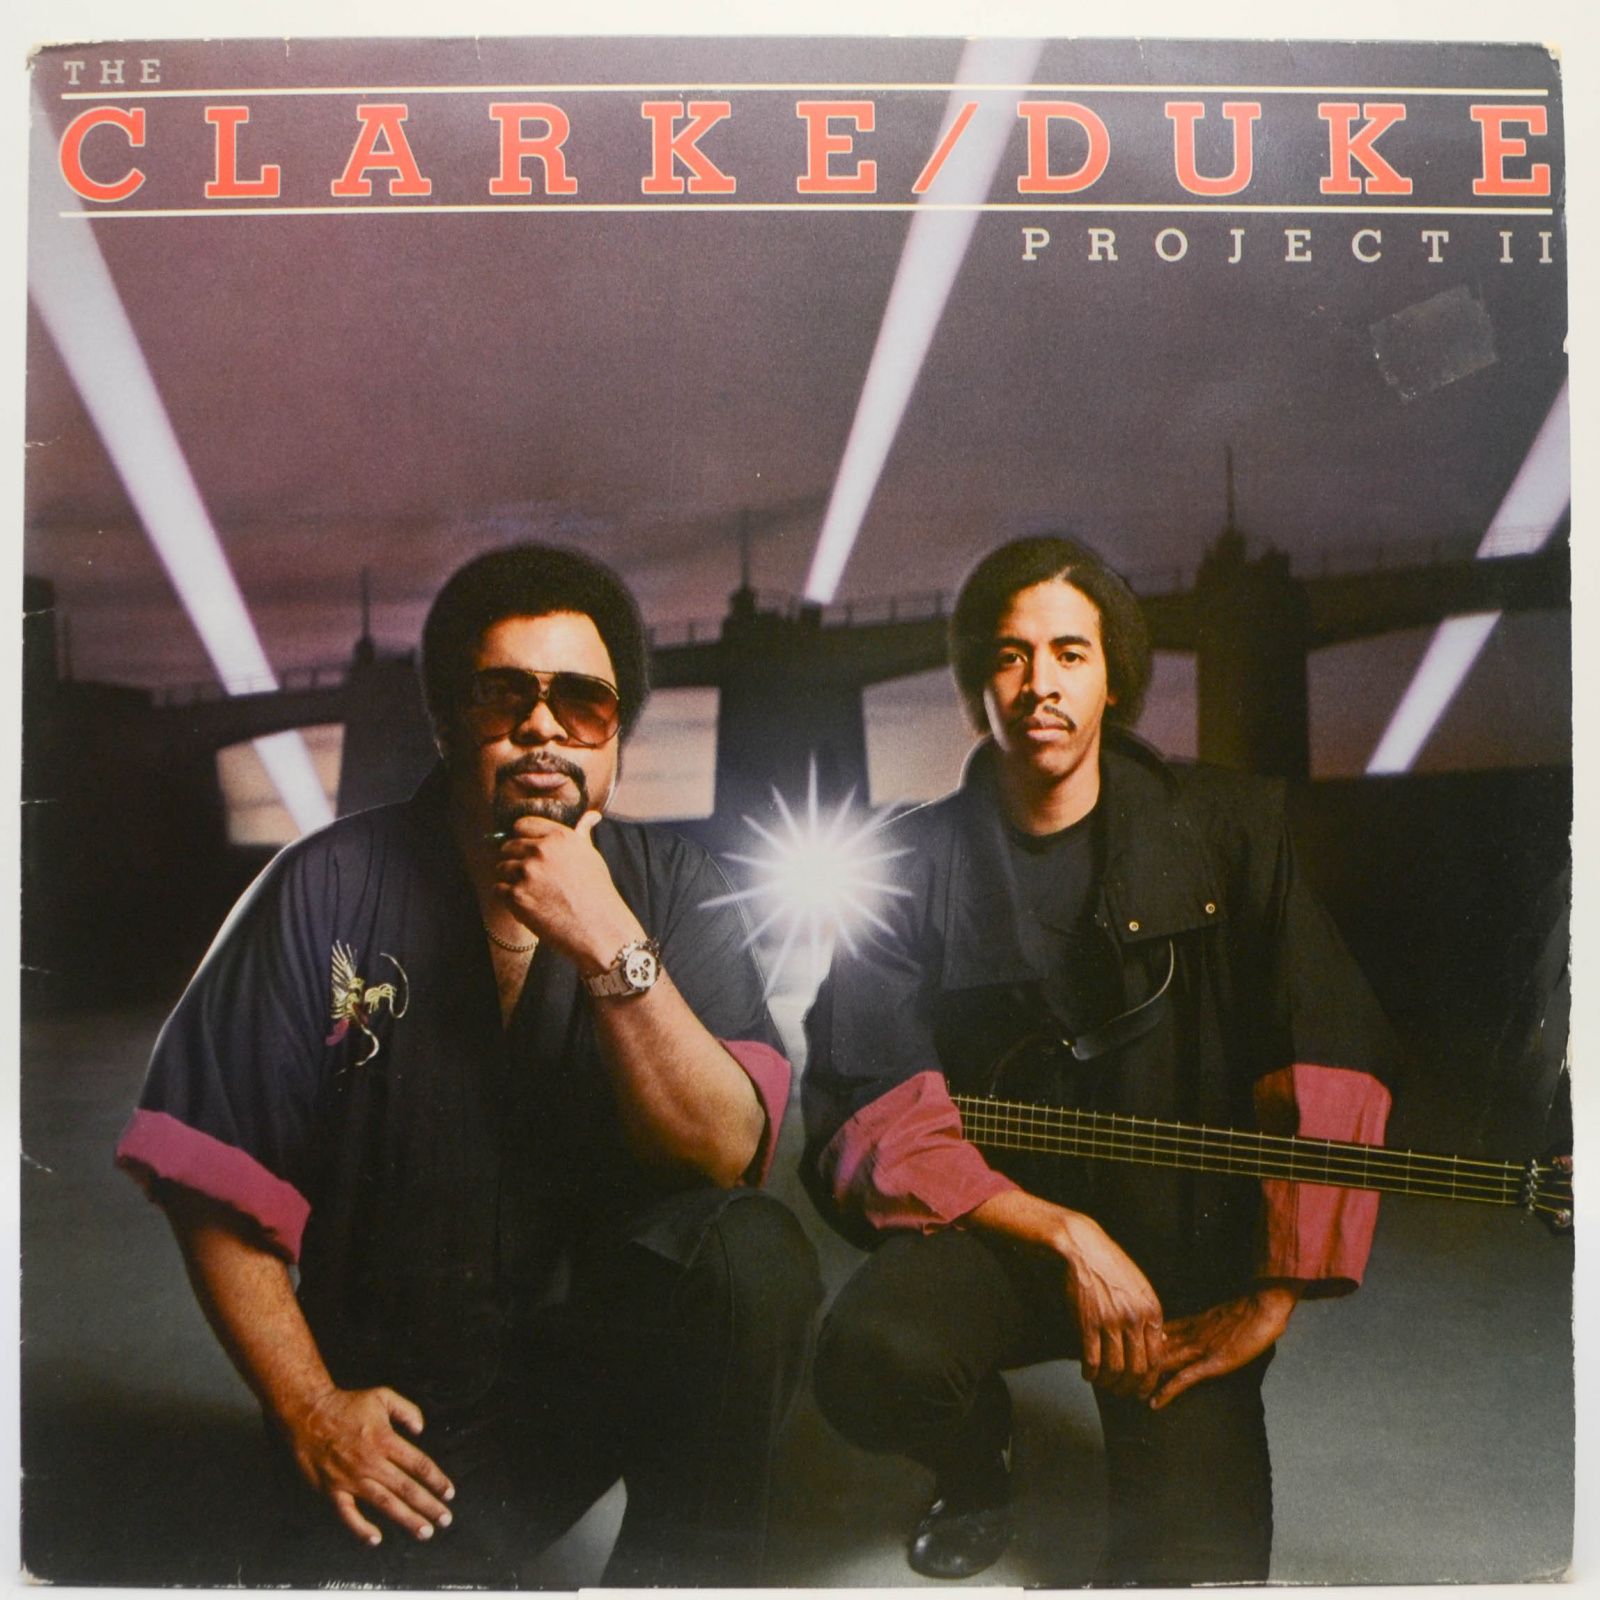 The Clarke / Duke Project II, 1983